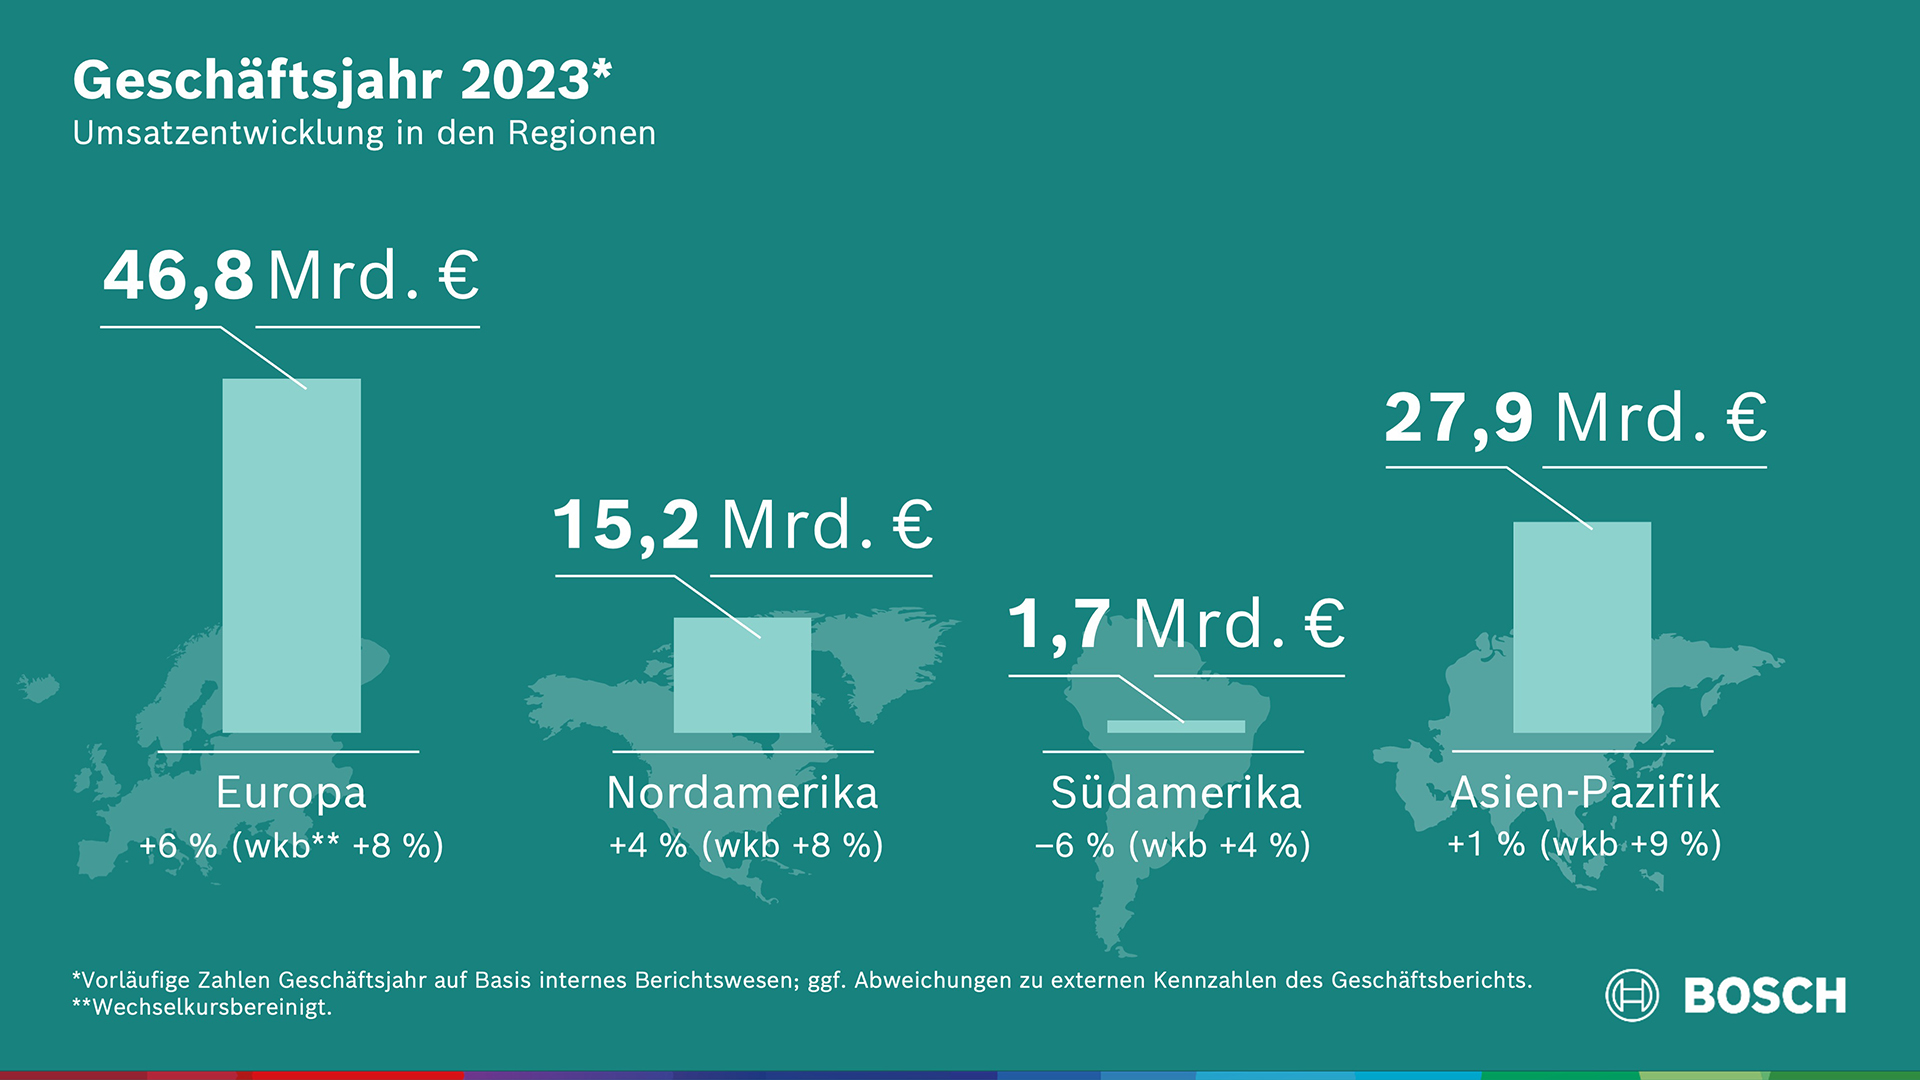 Geschäftsverlauf 2023: Stärkstes Wachstum in Europa und Nordamerika